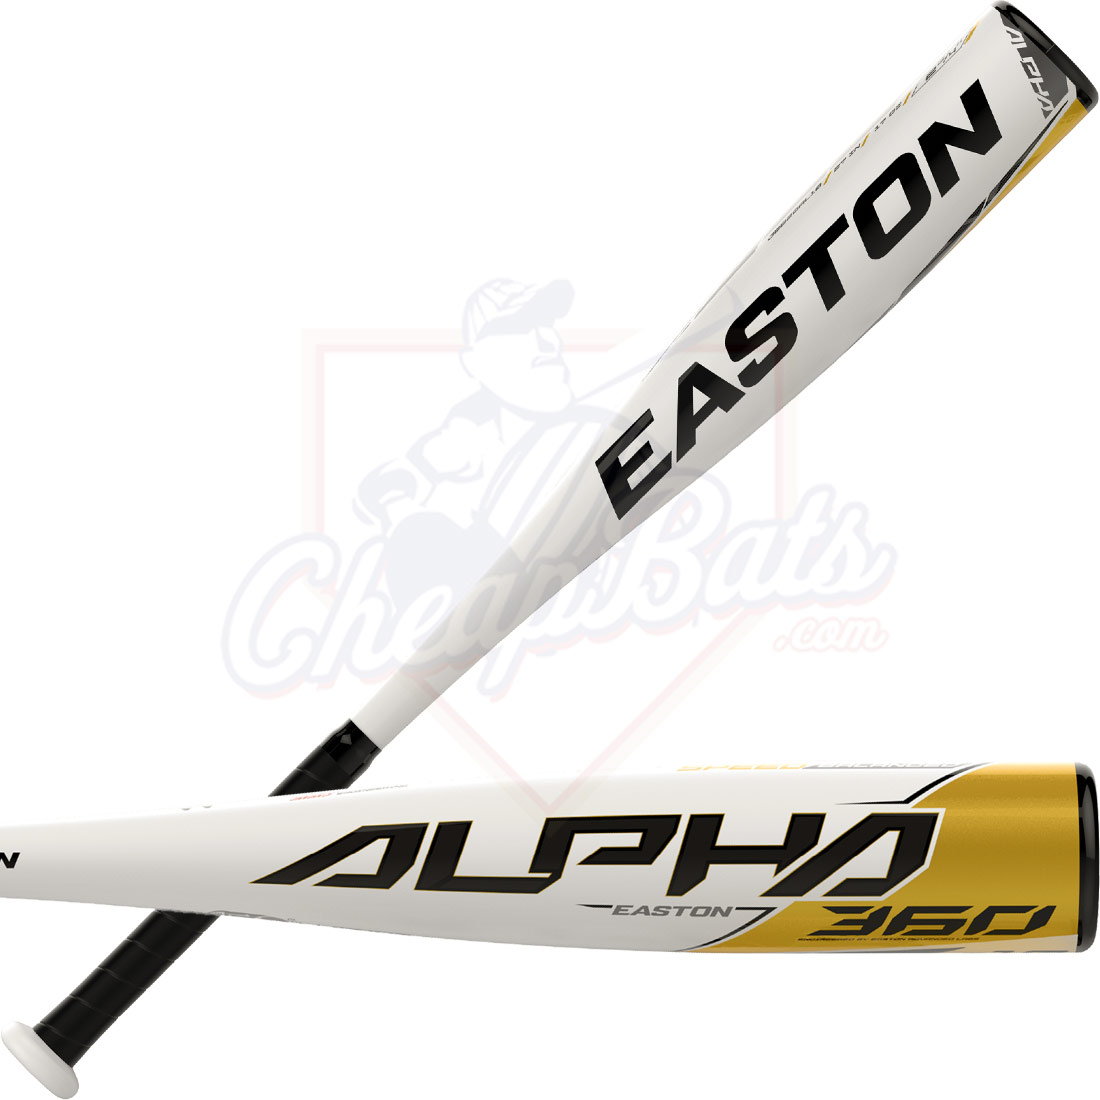 2020 Easton Alpha 360-13 USA Baseball Bat 